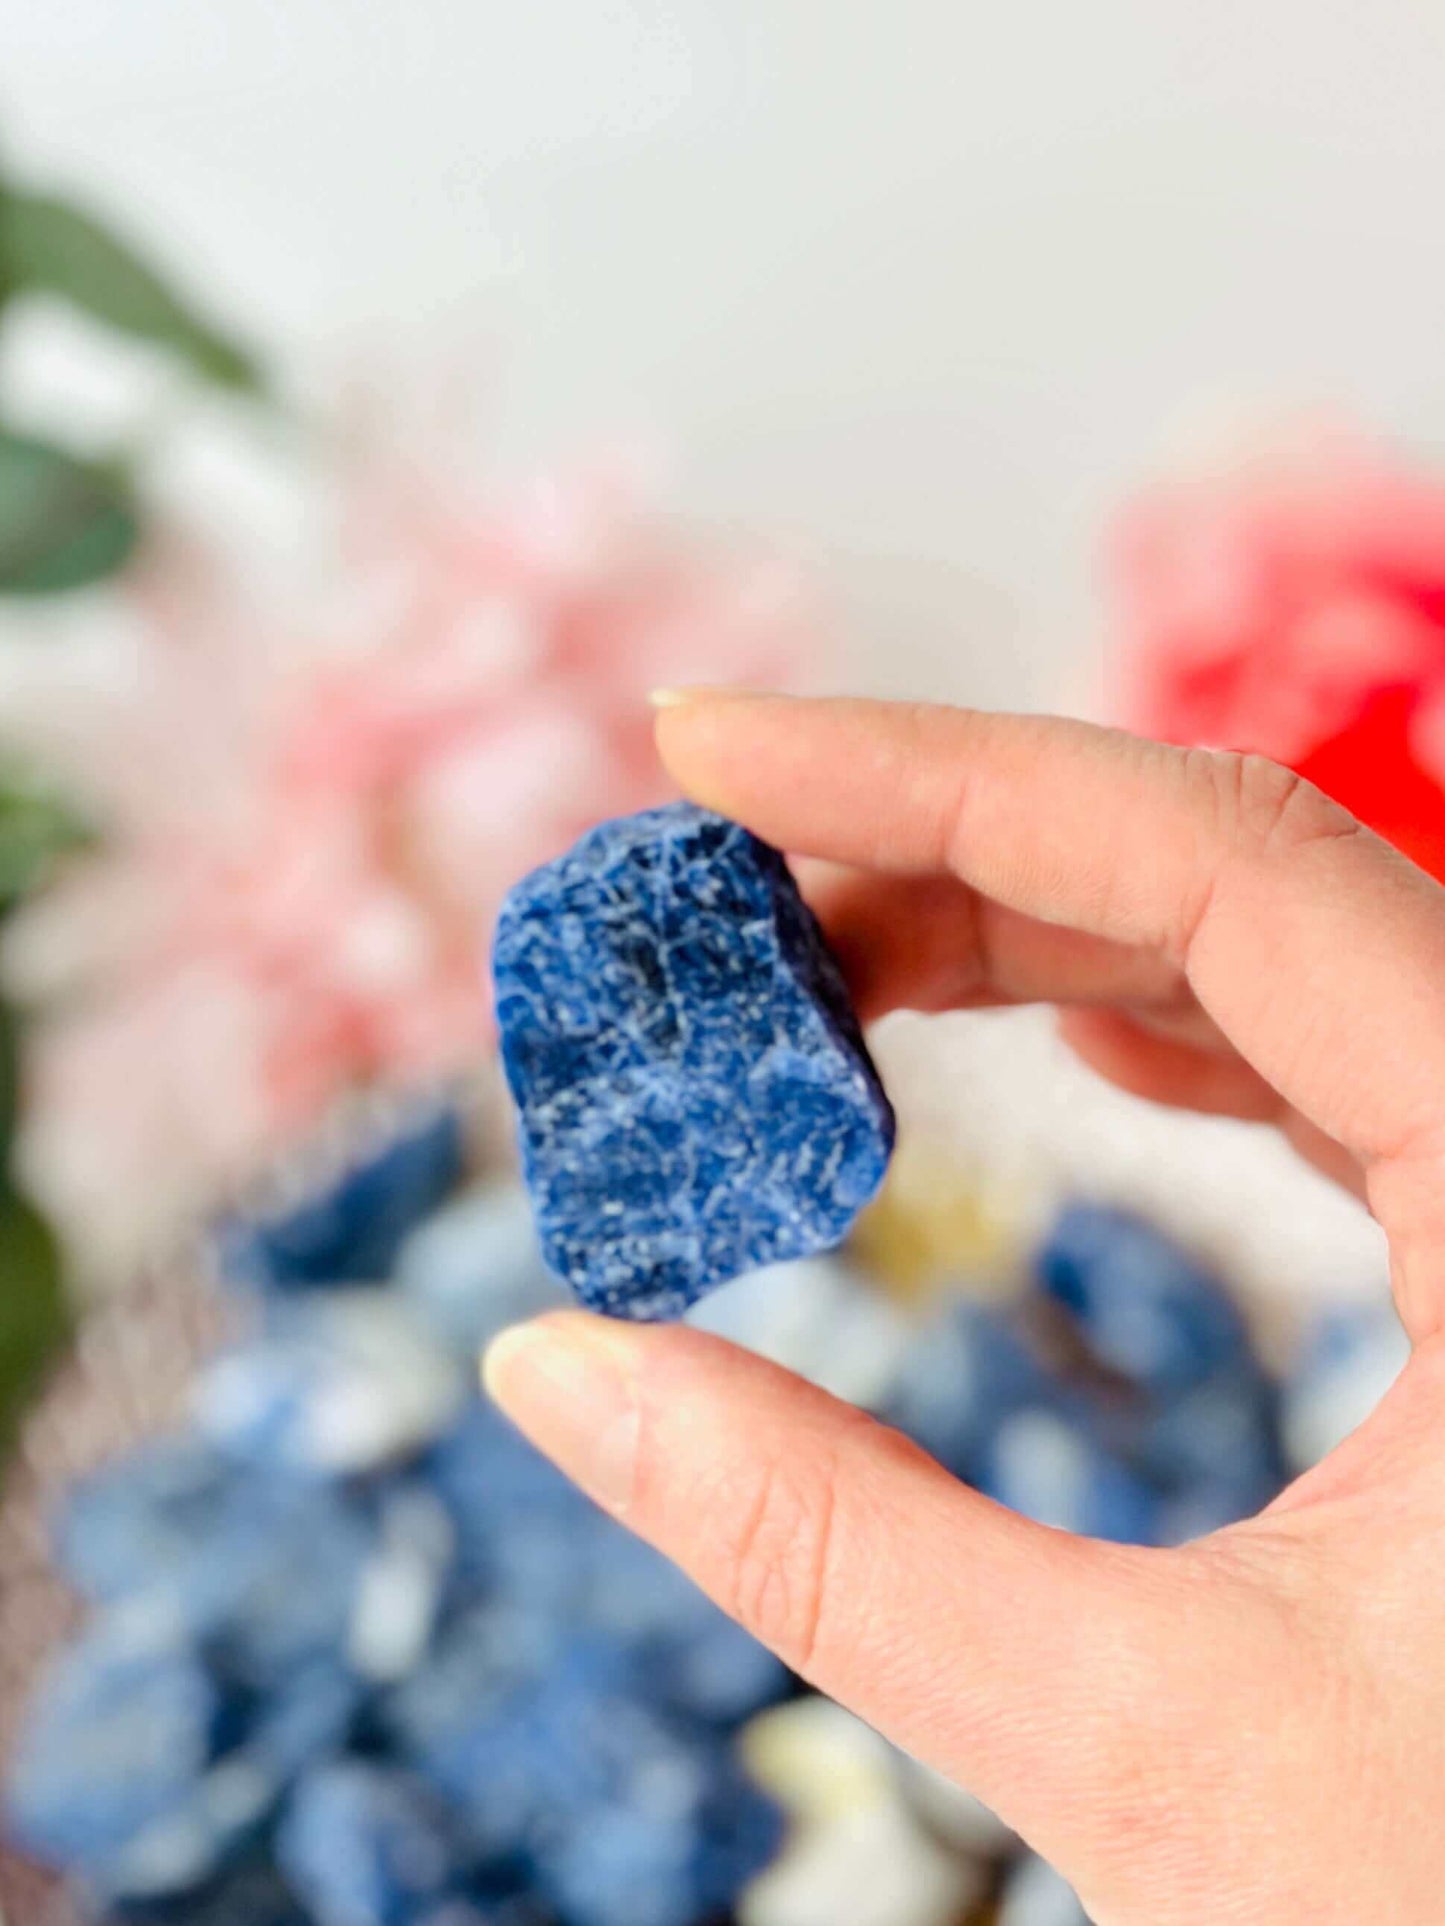 Raw Blue Sodalite crystals